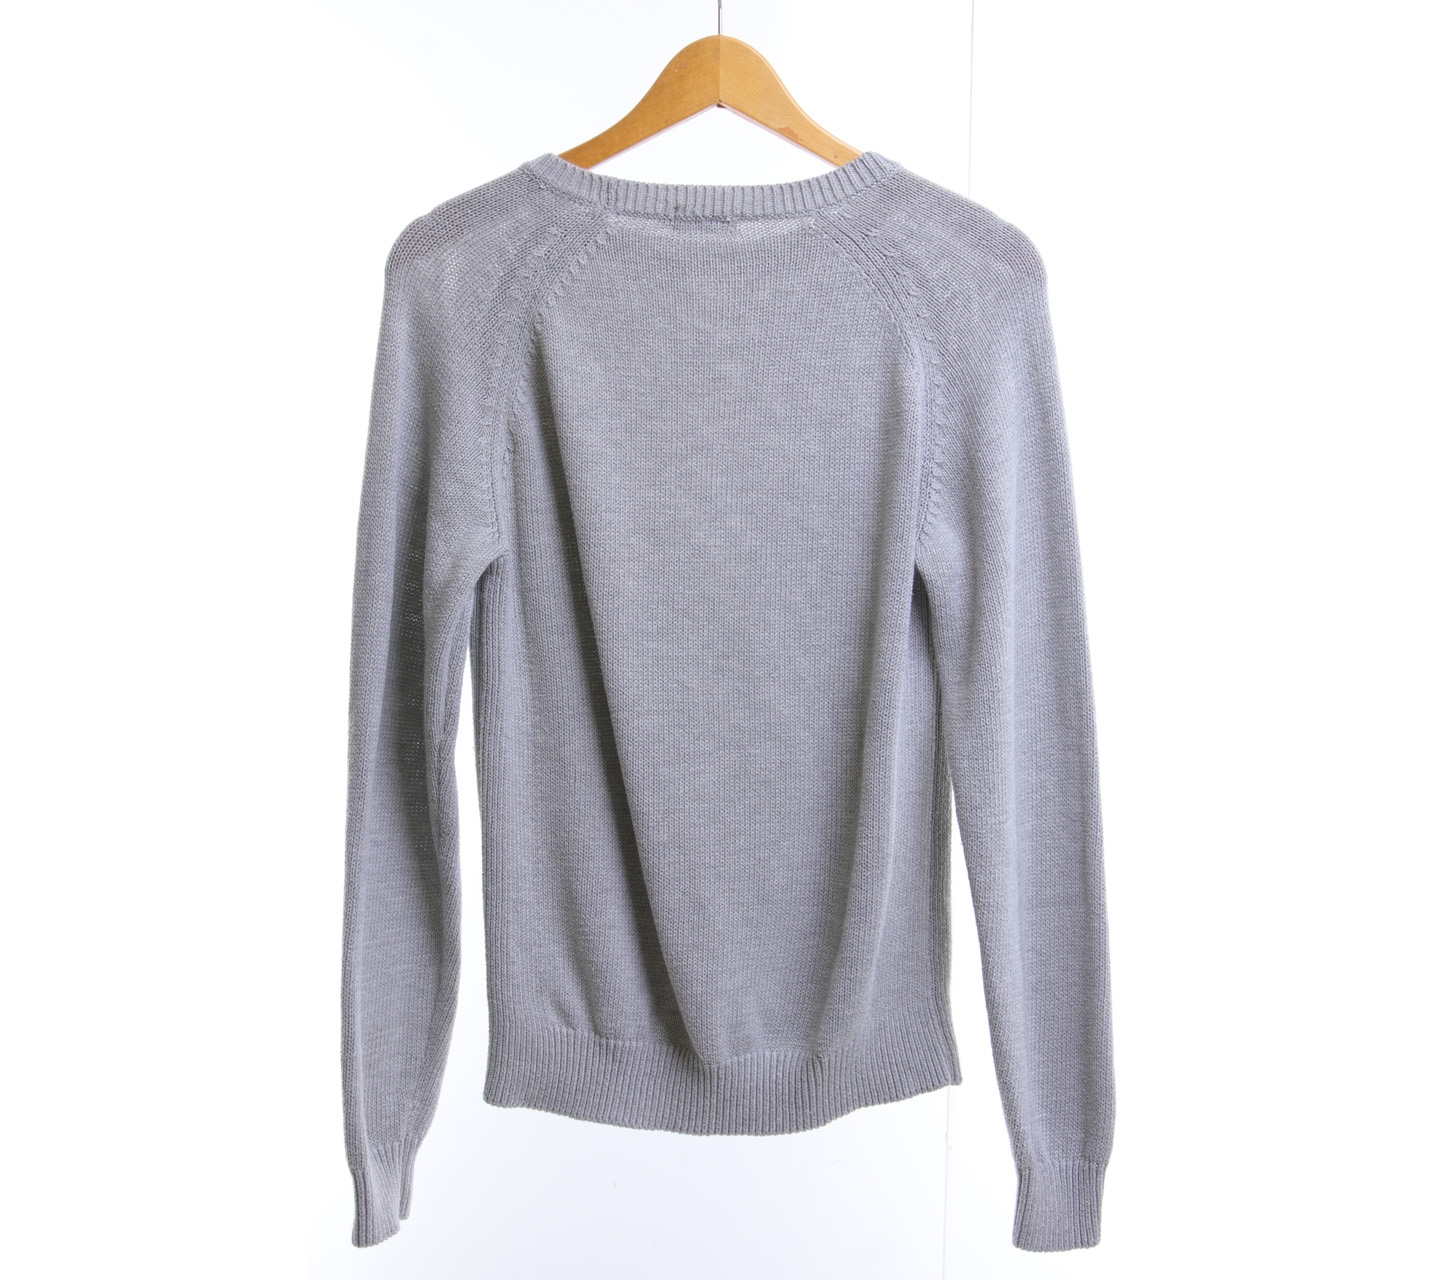 UNIQLO Grey Sweater